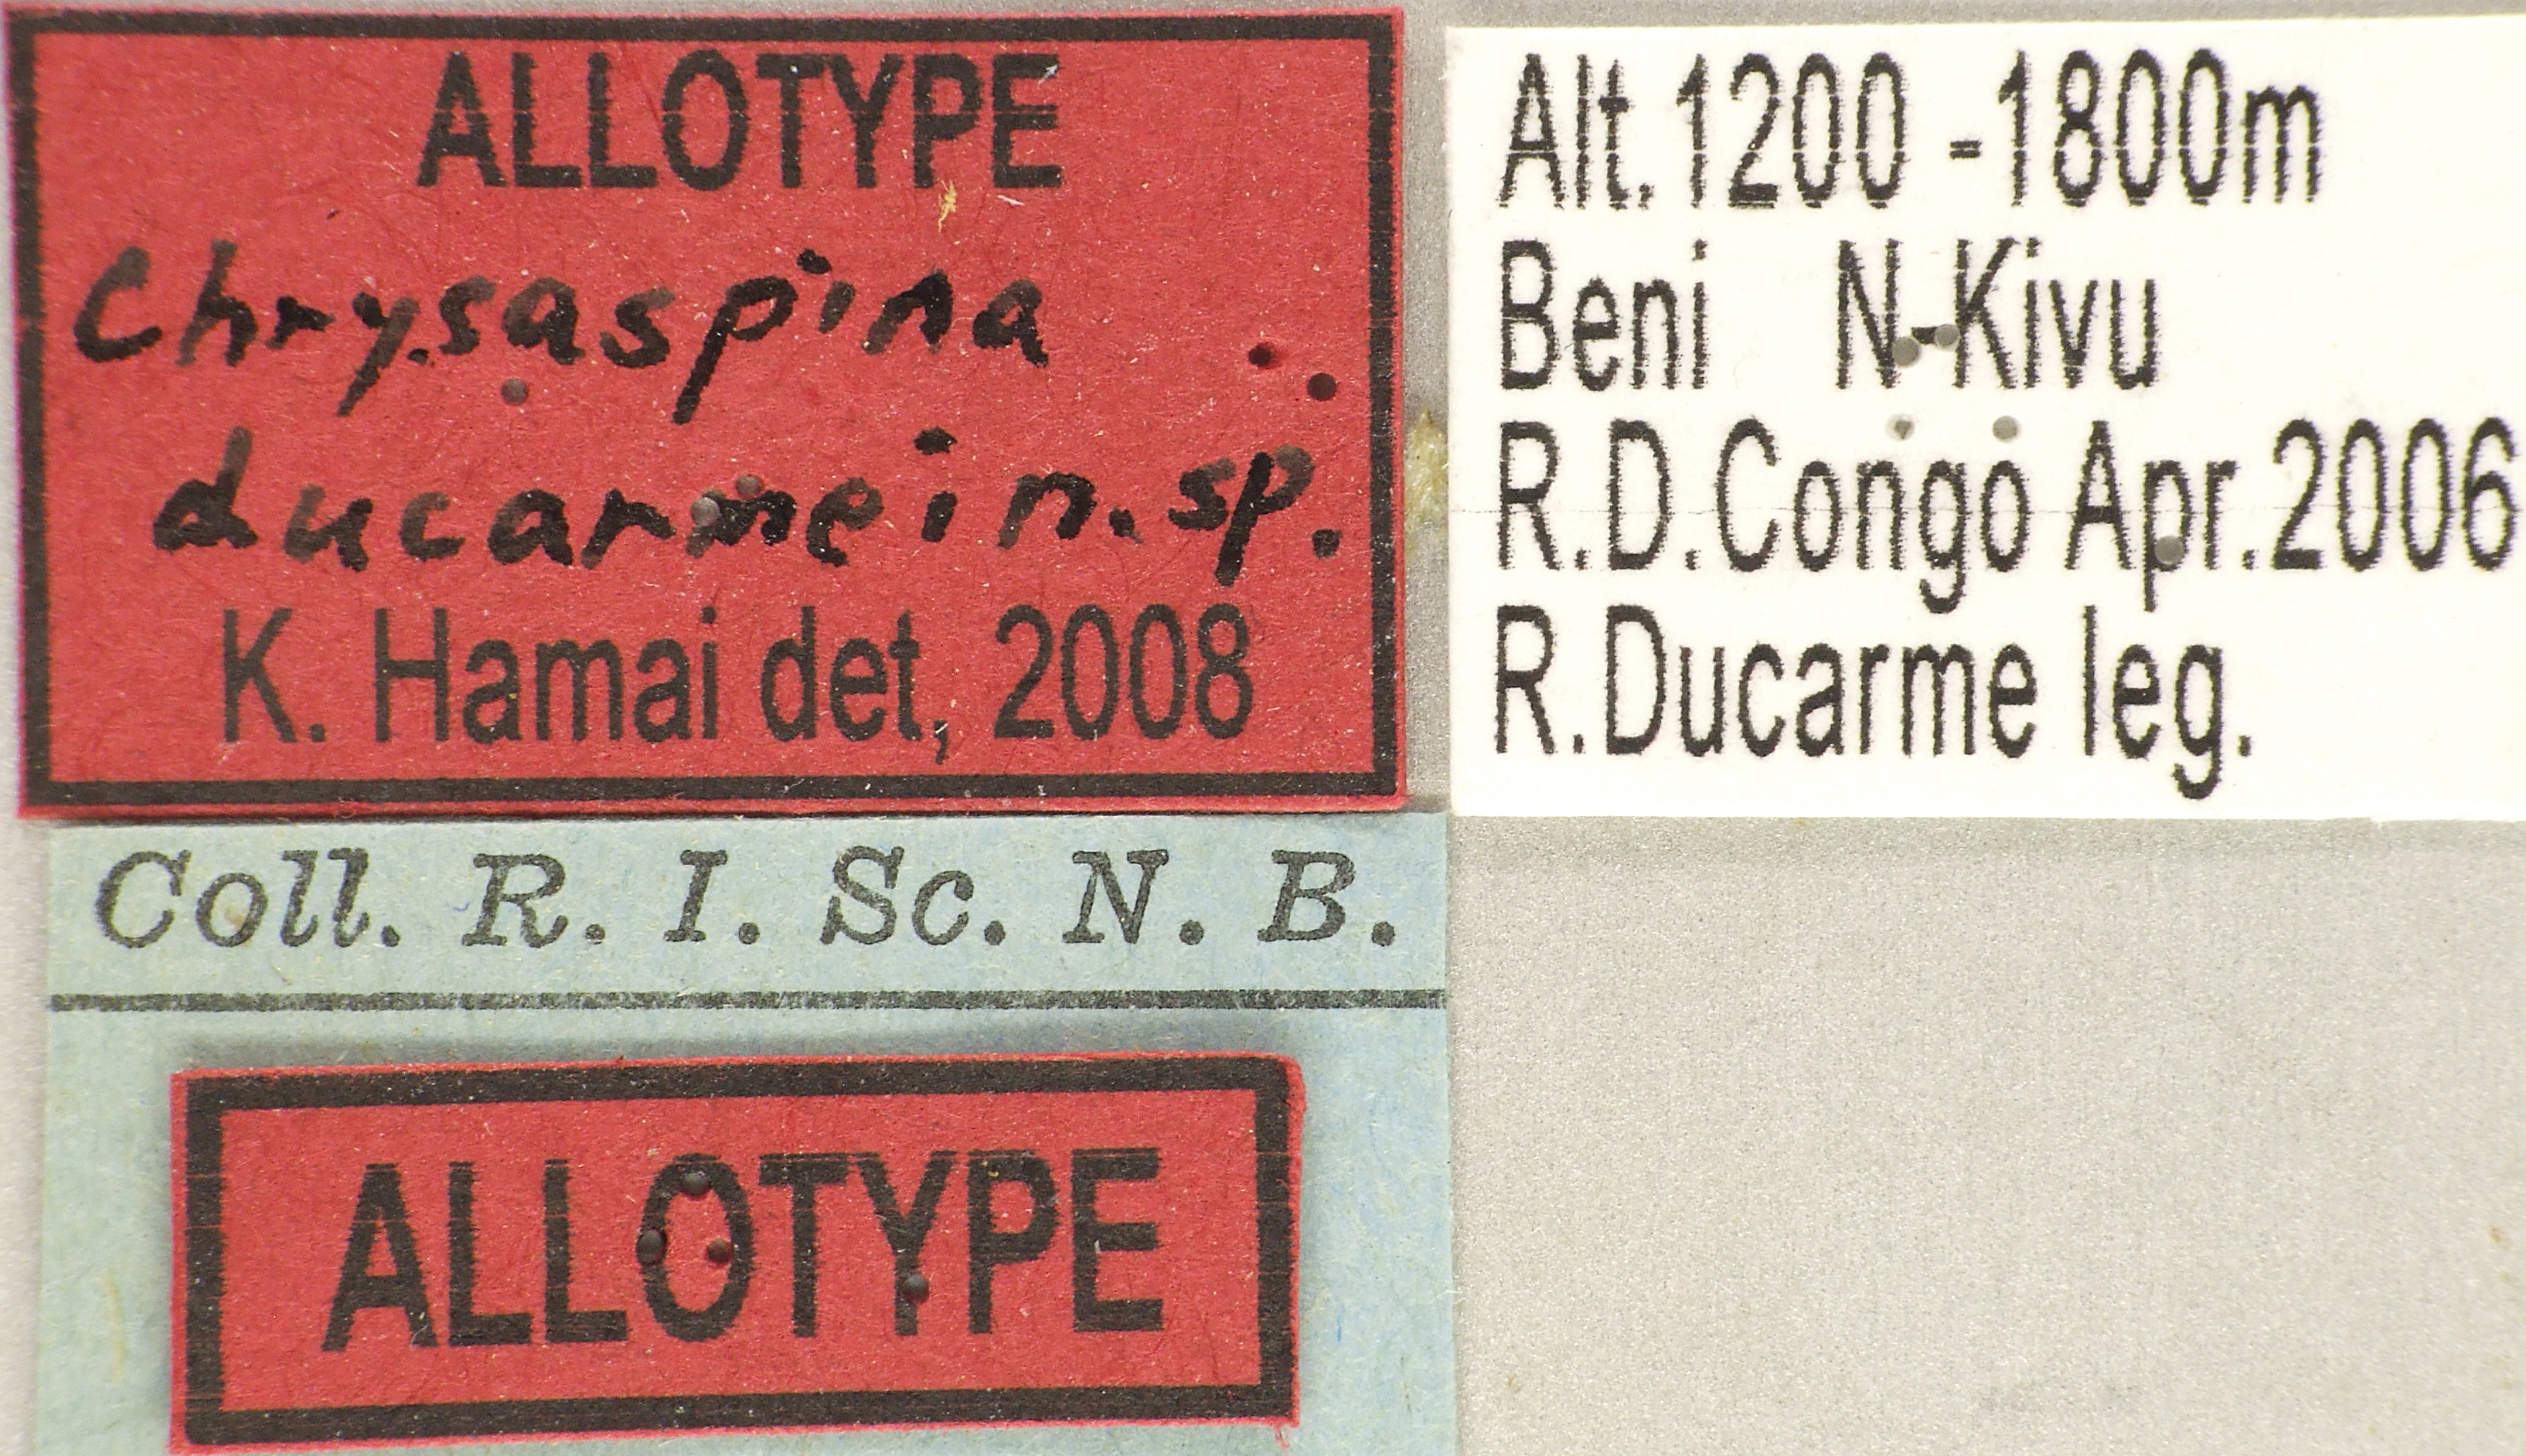 Chrysaspina ducarmei at Lb.jpg